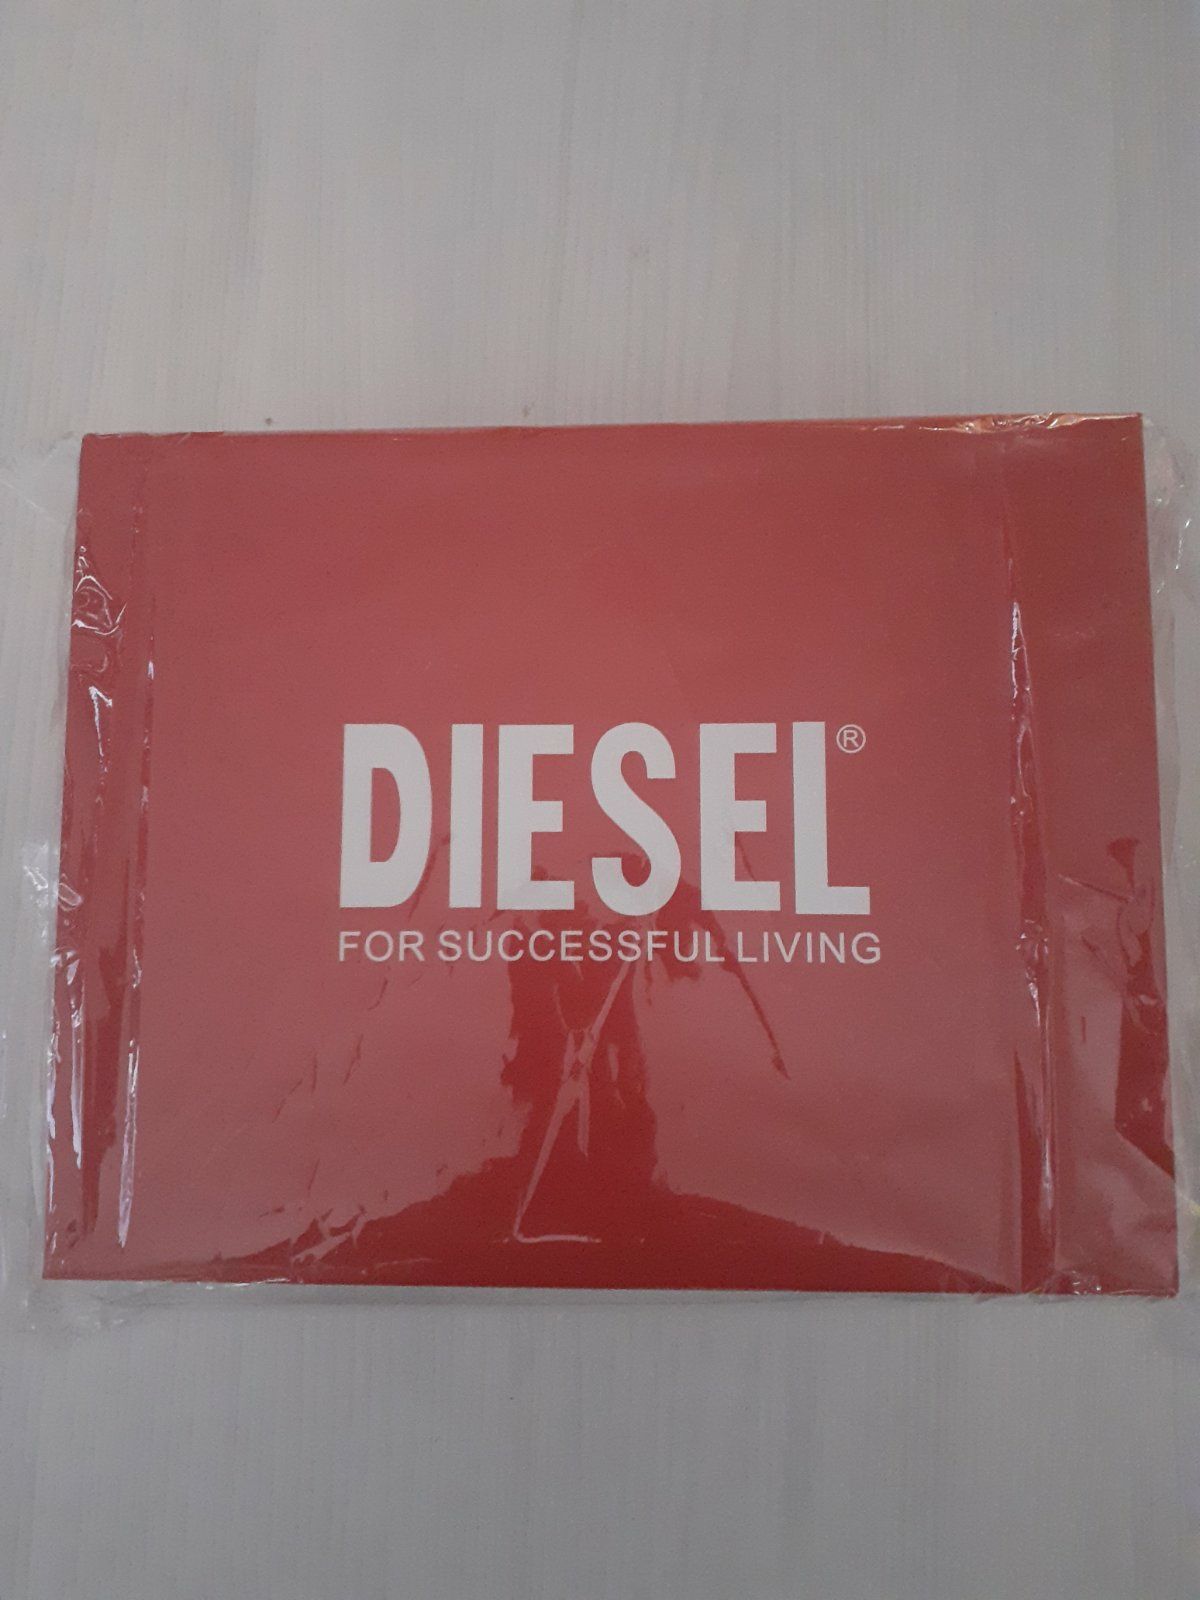 Чанта Diesel чисто нова чантичка